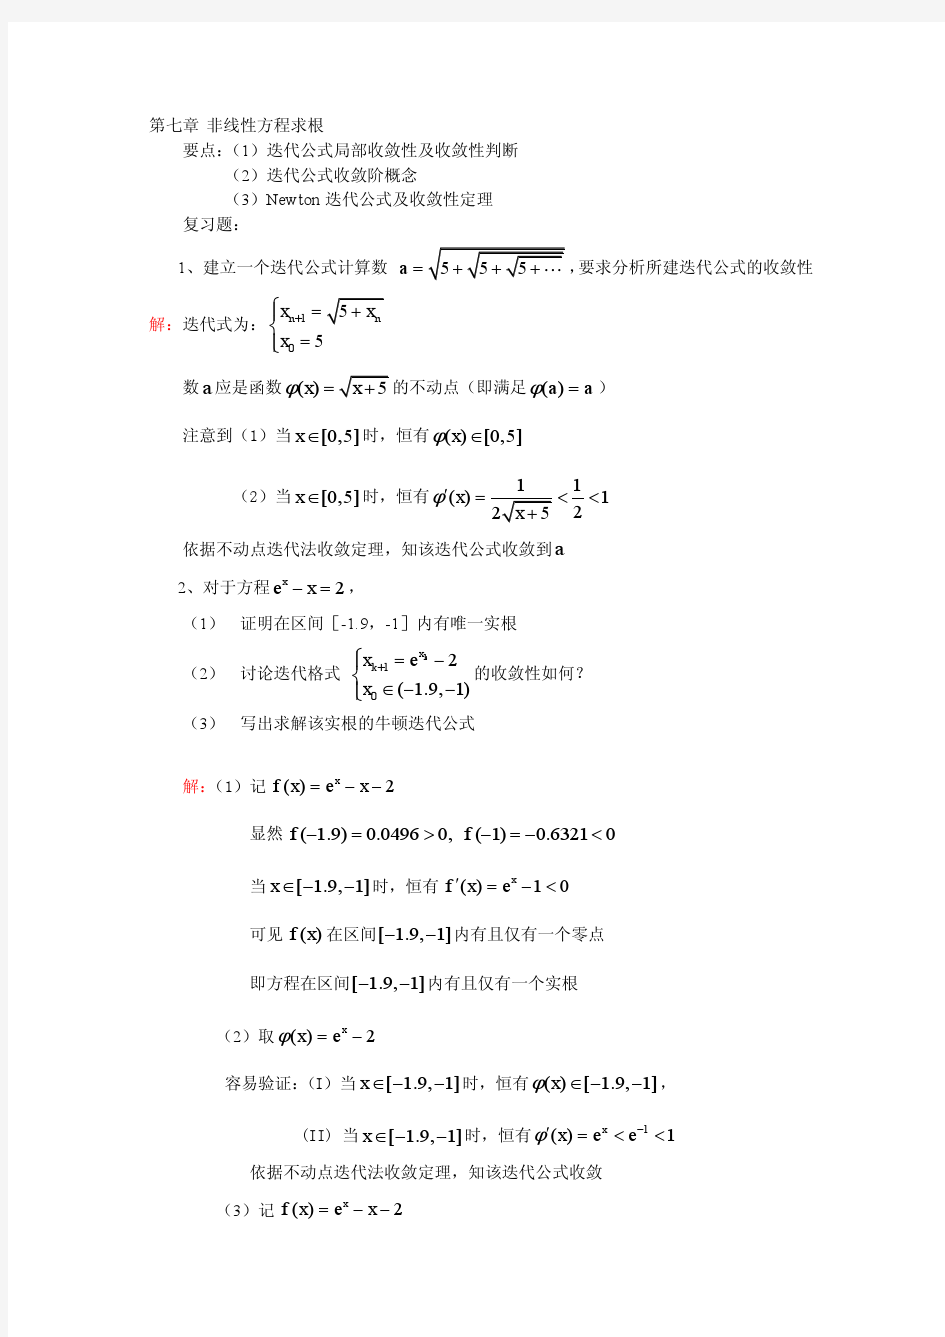 武汉大学数值分析分章复习(非线性方程求根)